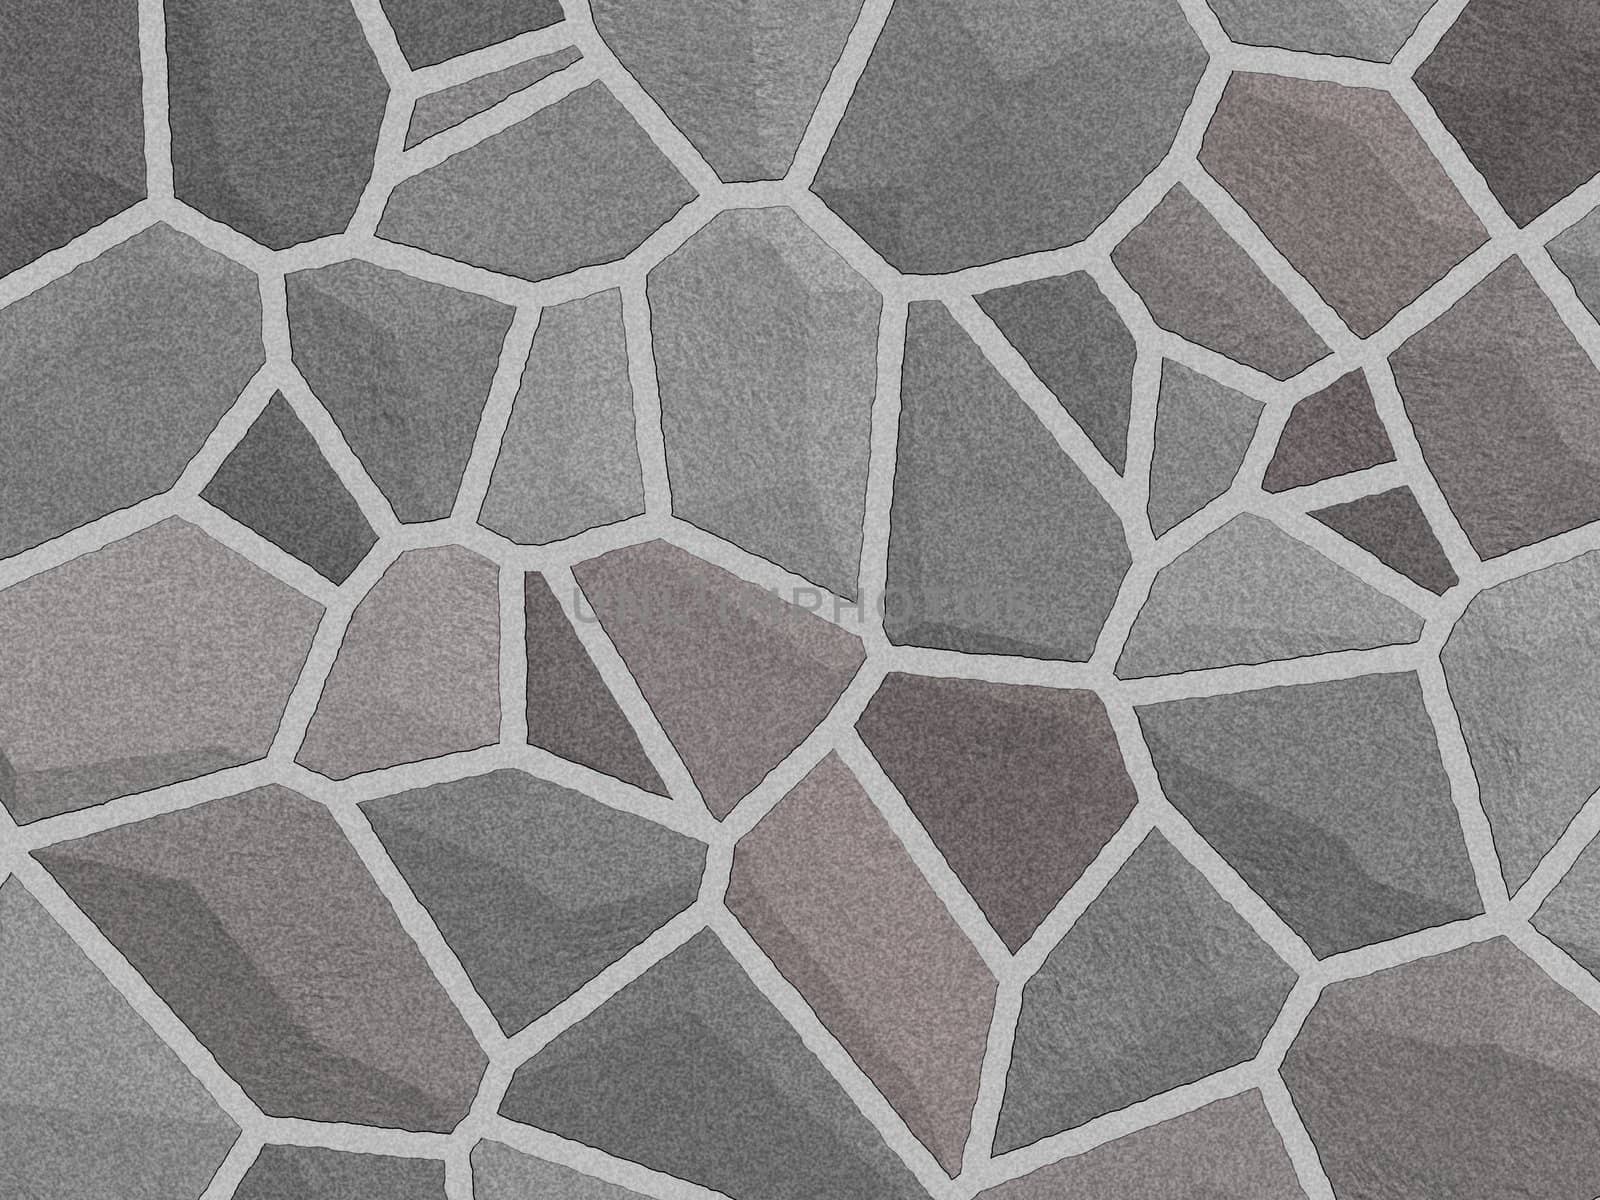  Texture stone sherd floor